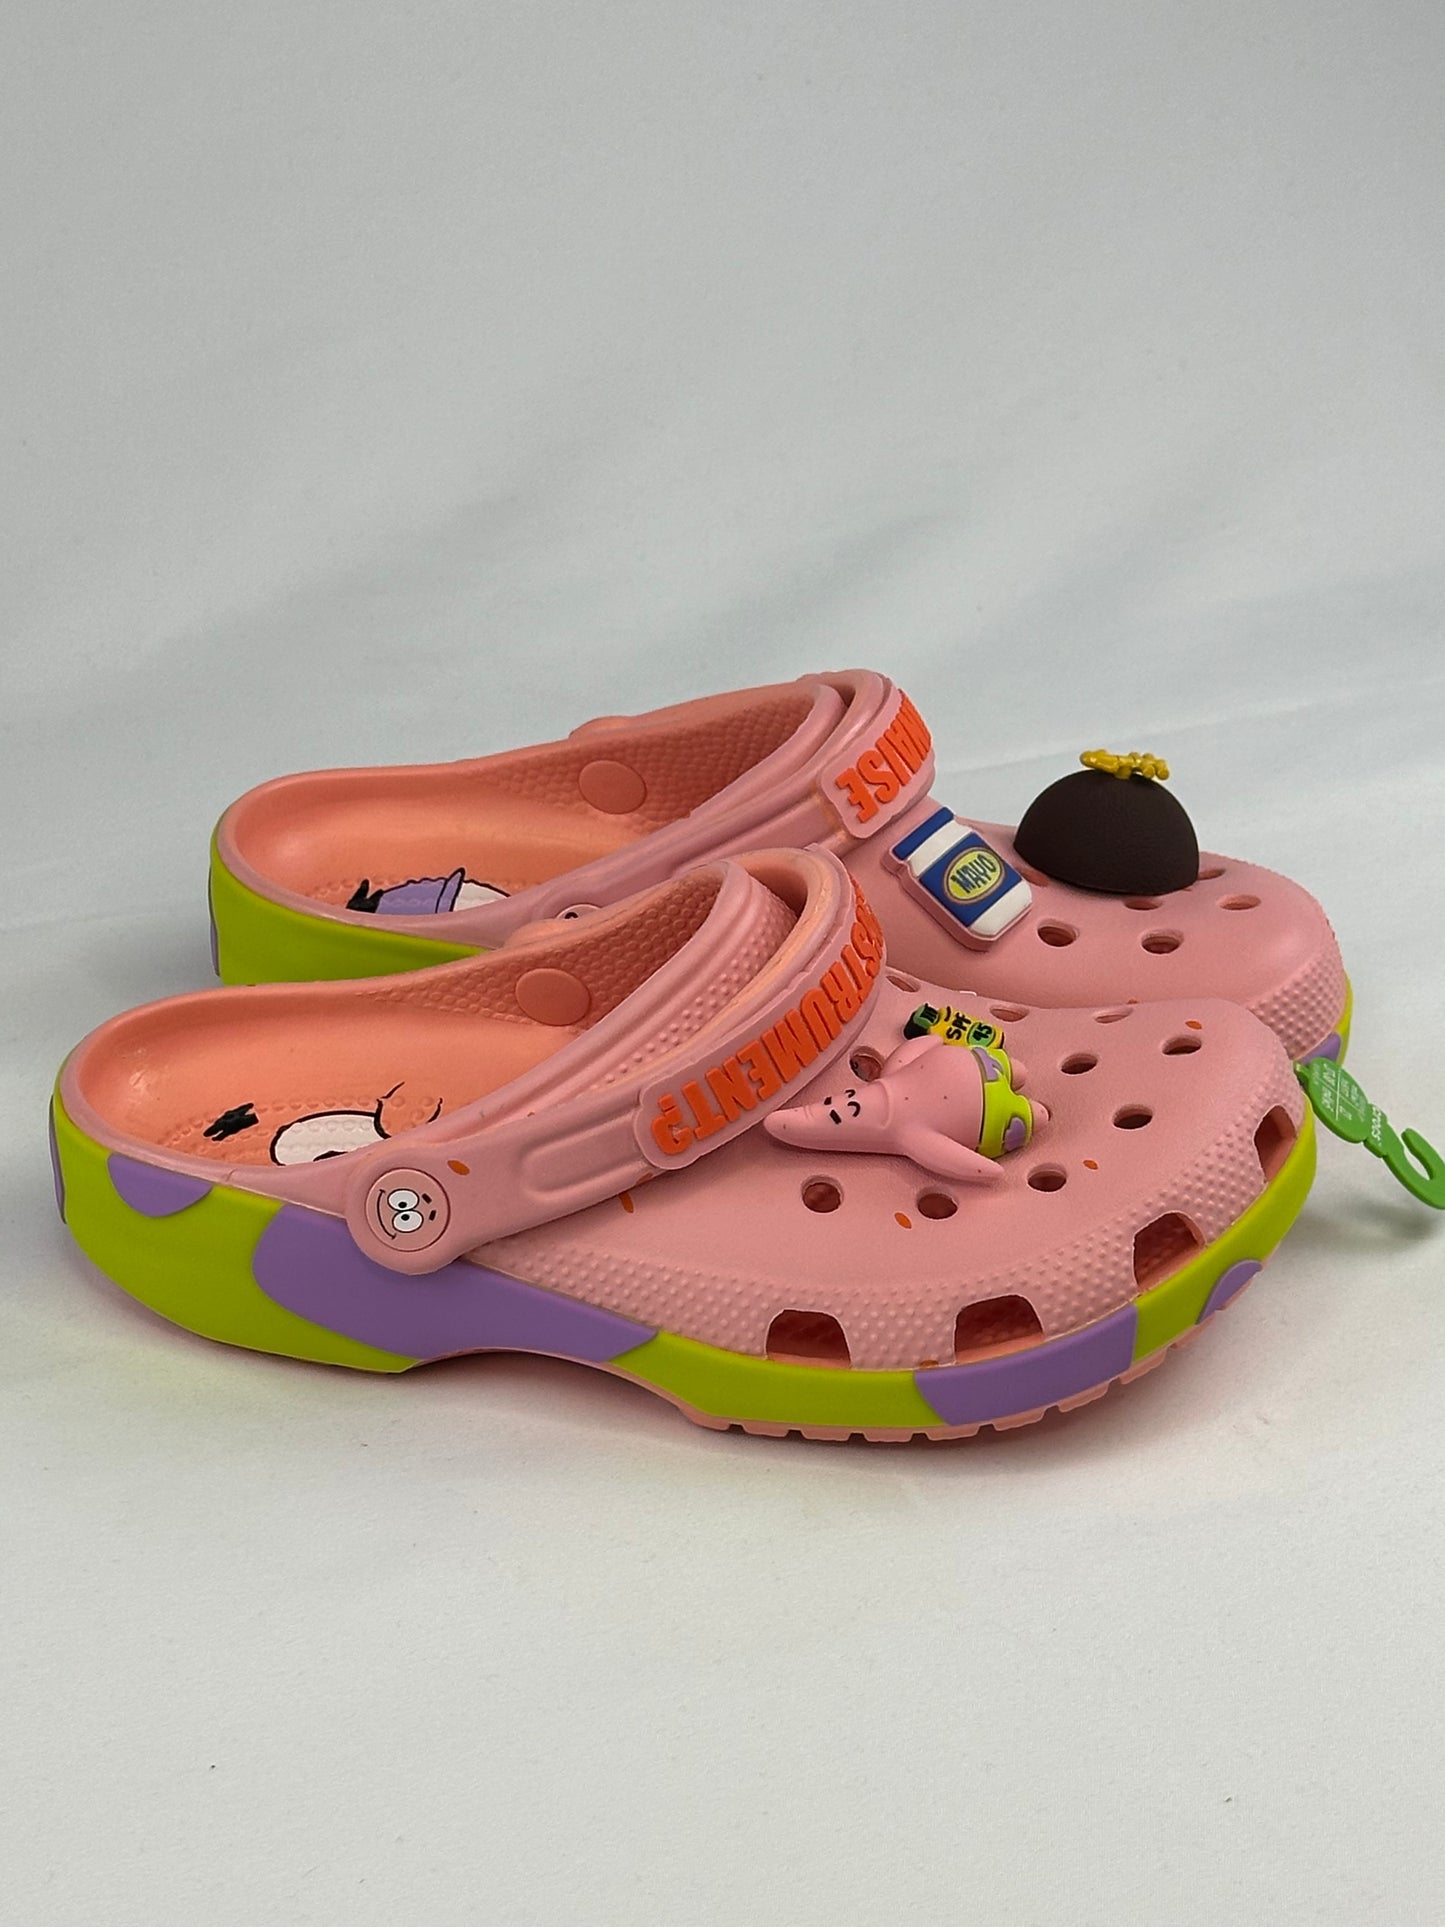 Crocs Classic Clog SpongeBob SquarePants Patrick Star